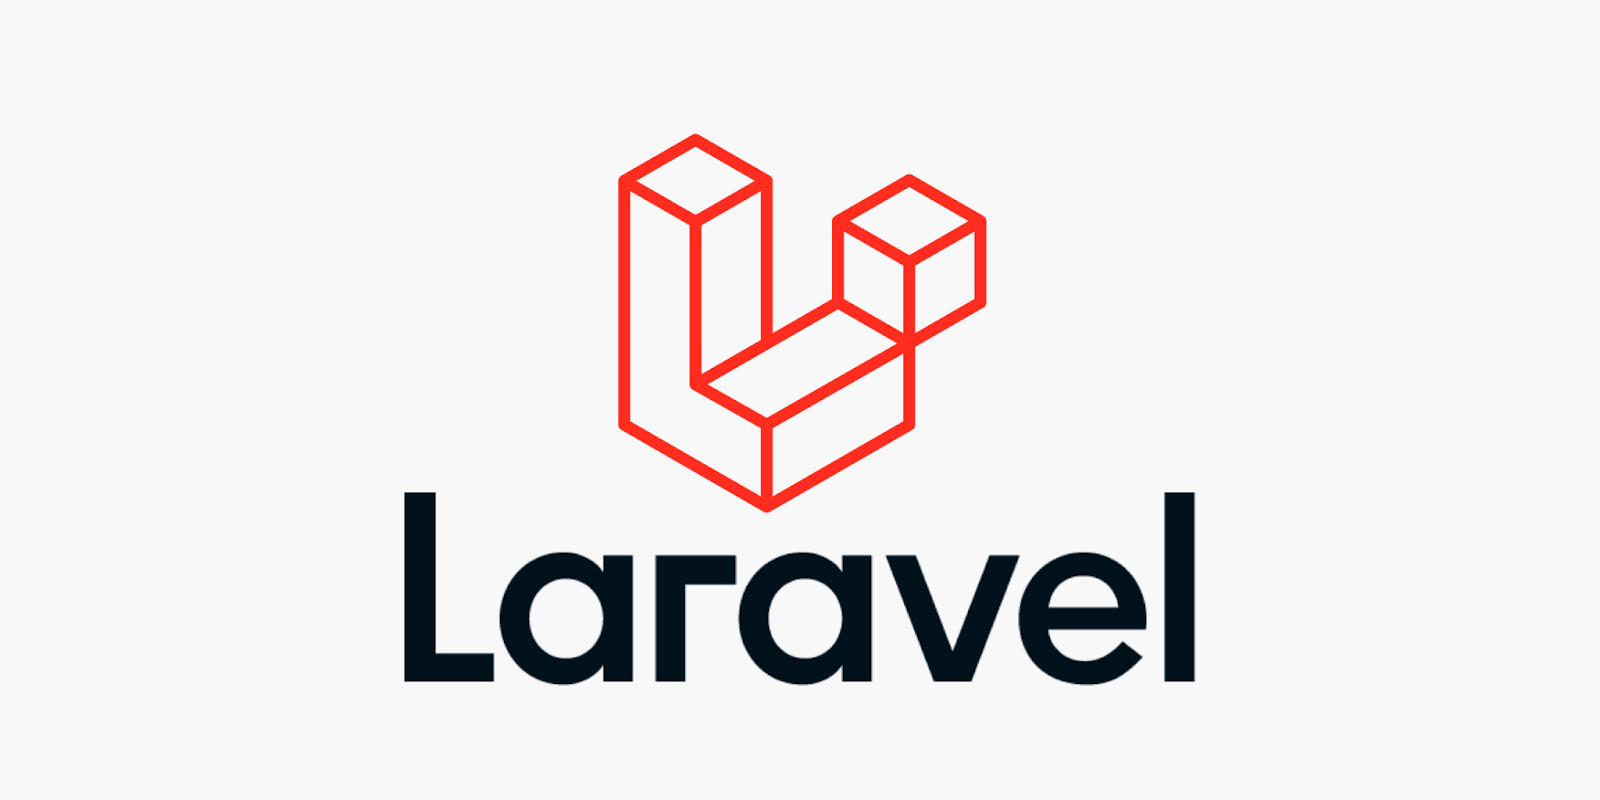 Het Laravel logo met het woord in het zwart en het logo in het rood bovenop het Laravel woord.